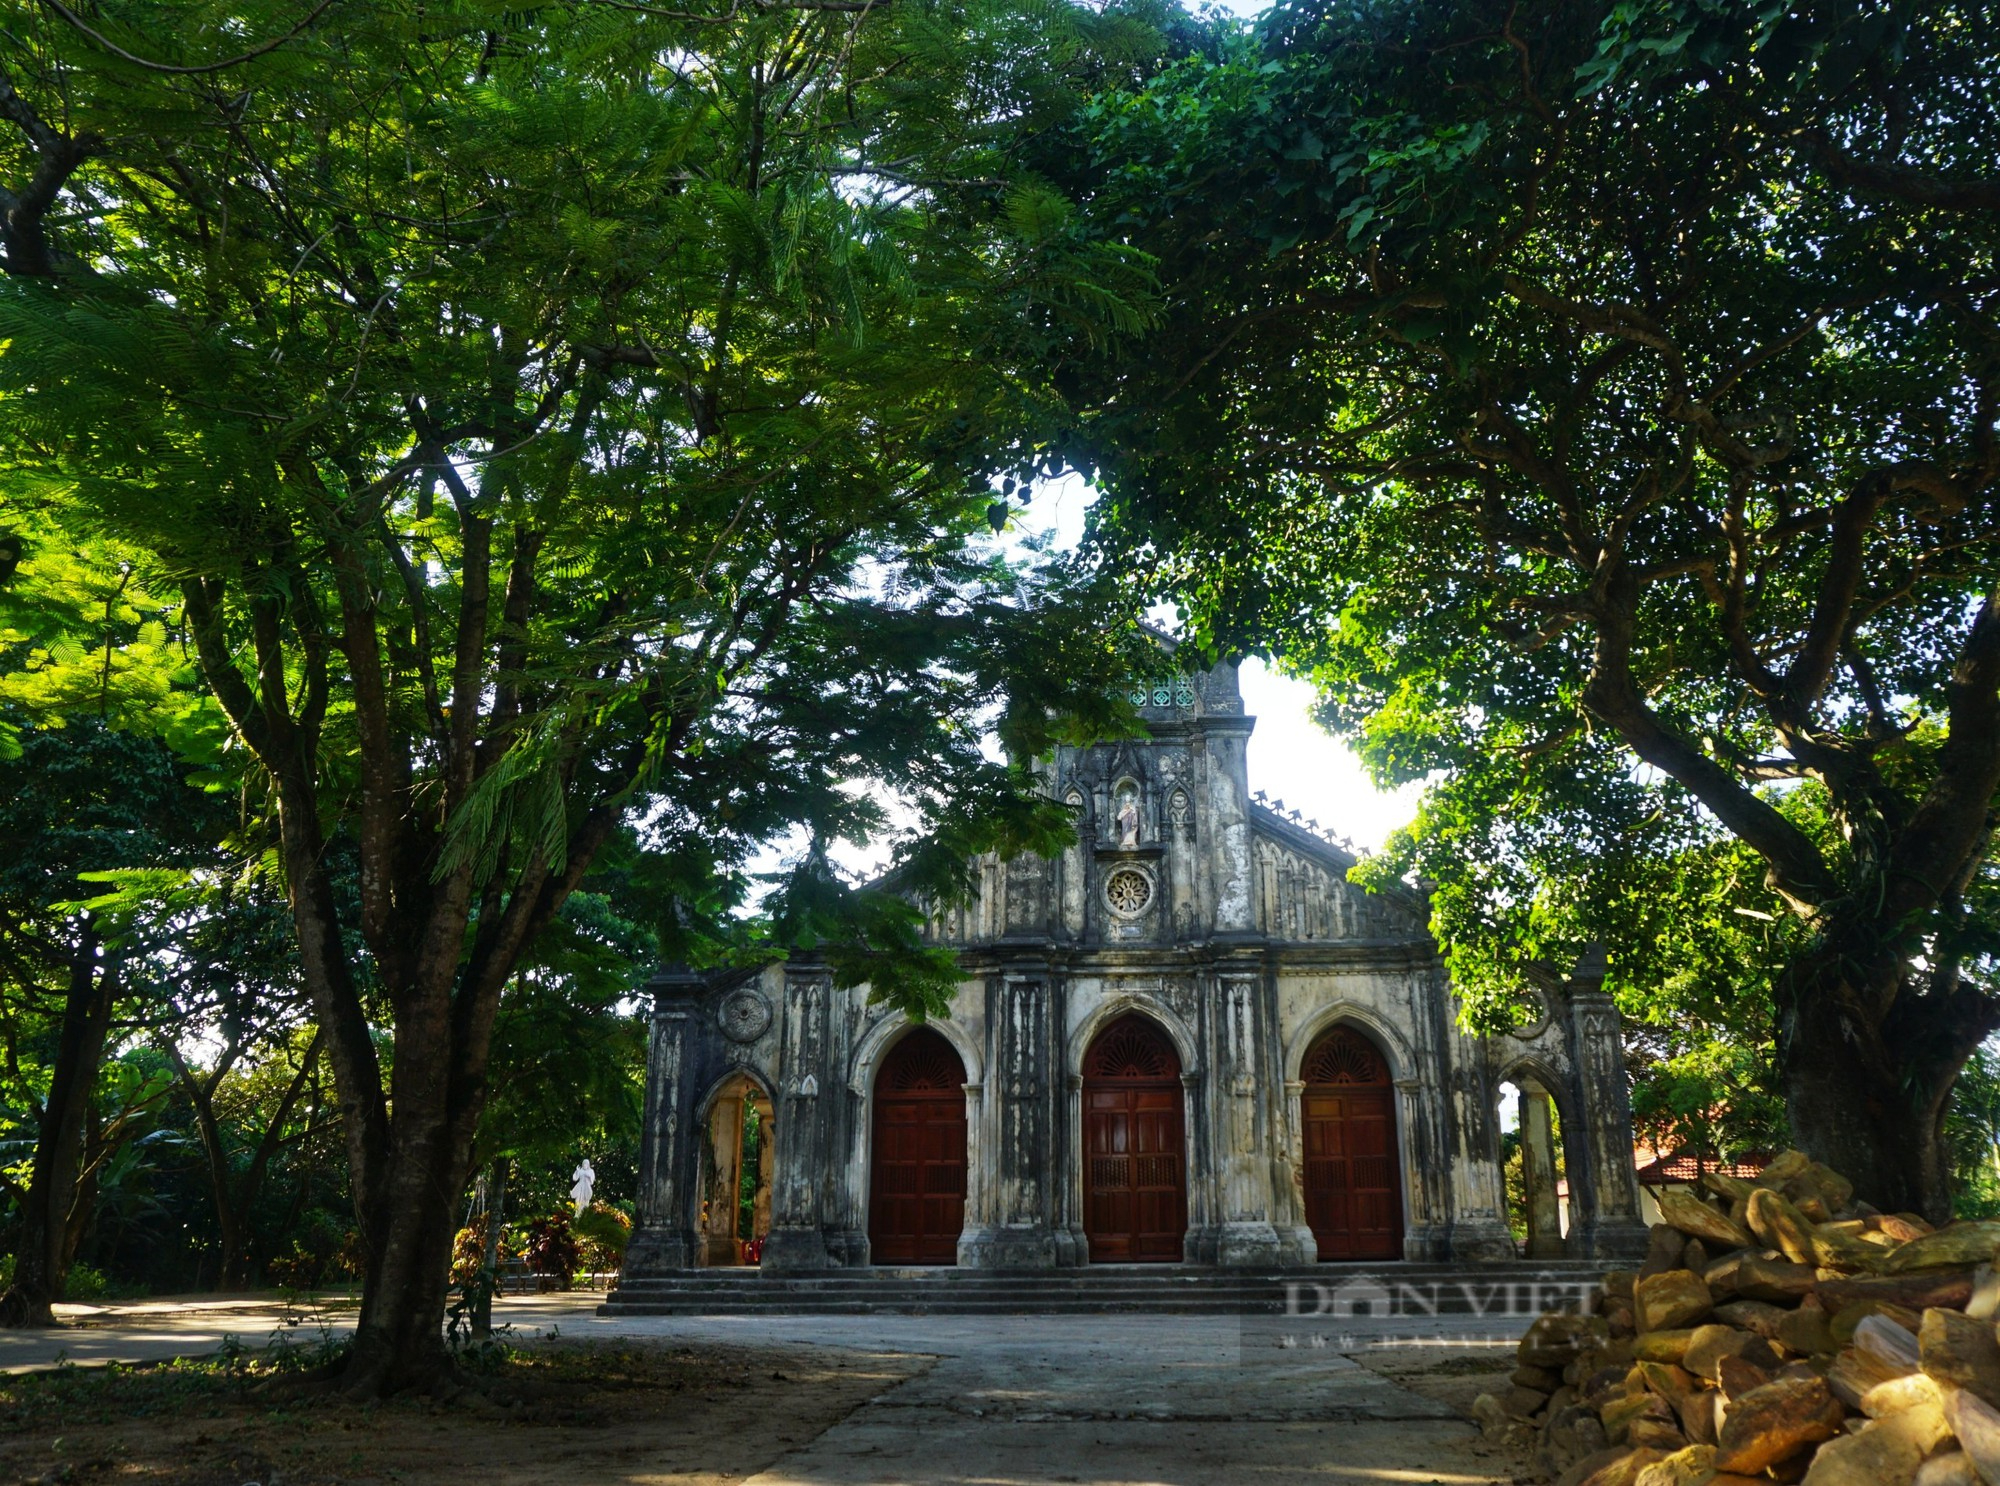 Nét đẹp cổ kính nhà thờ Pháp cổ hơn 100 tuổi tại Đà Nẵng - Ảnh 1.